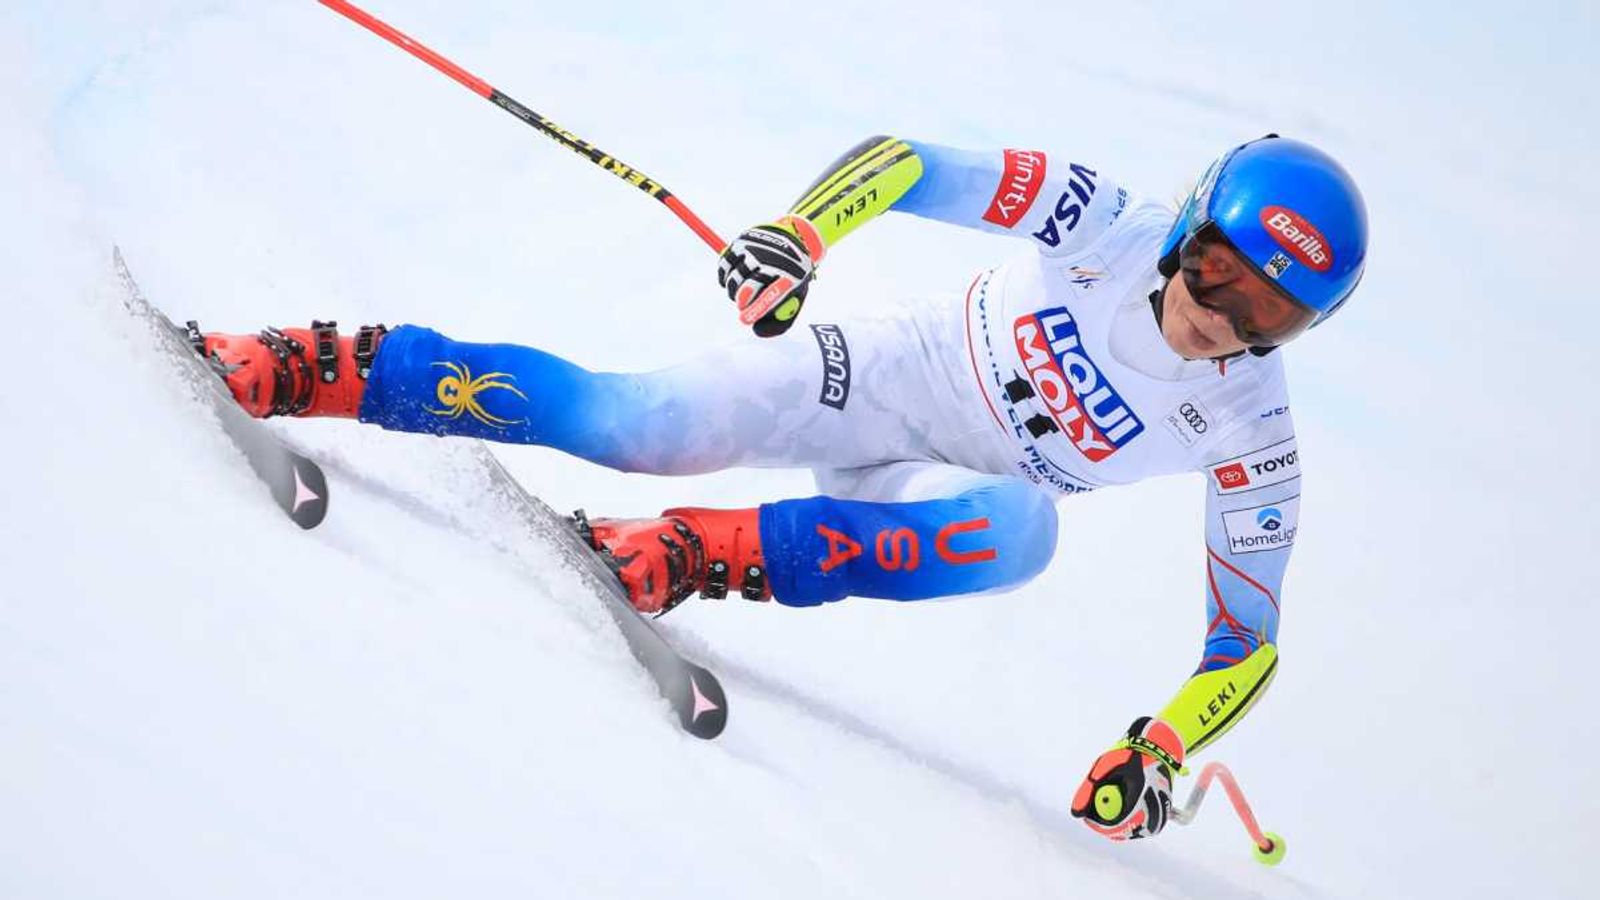 Notizie di sci alpino: la superstar Mikaela Shiffrin vince la Coppa del Mondo assoluta |  Notizie di sport invernali